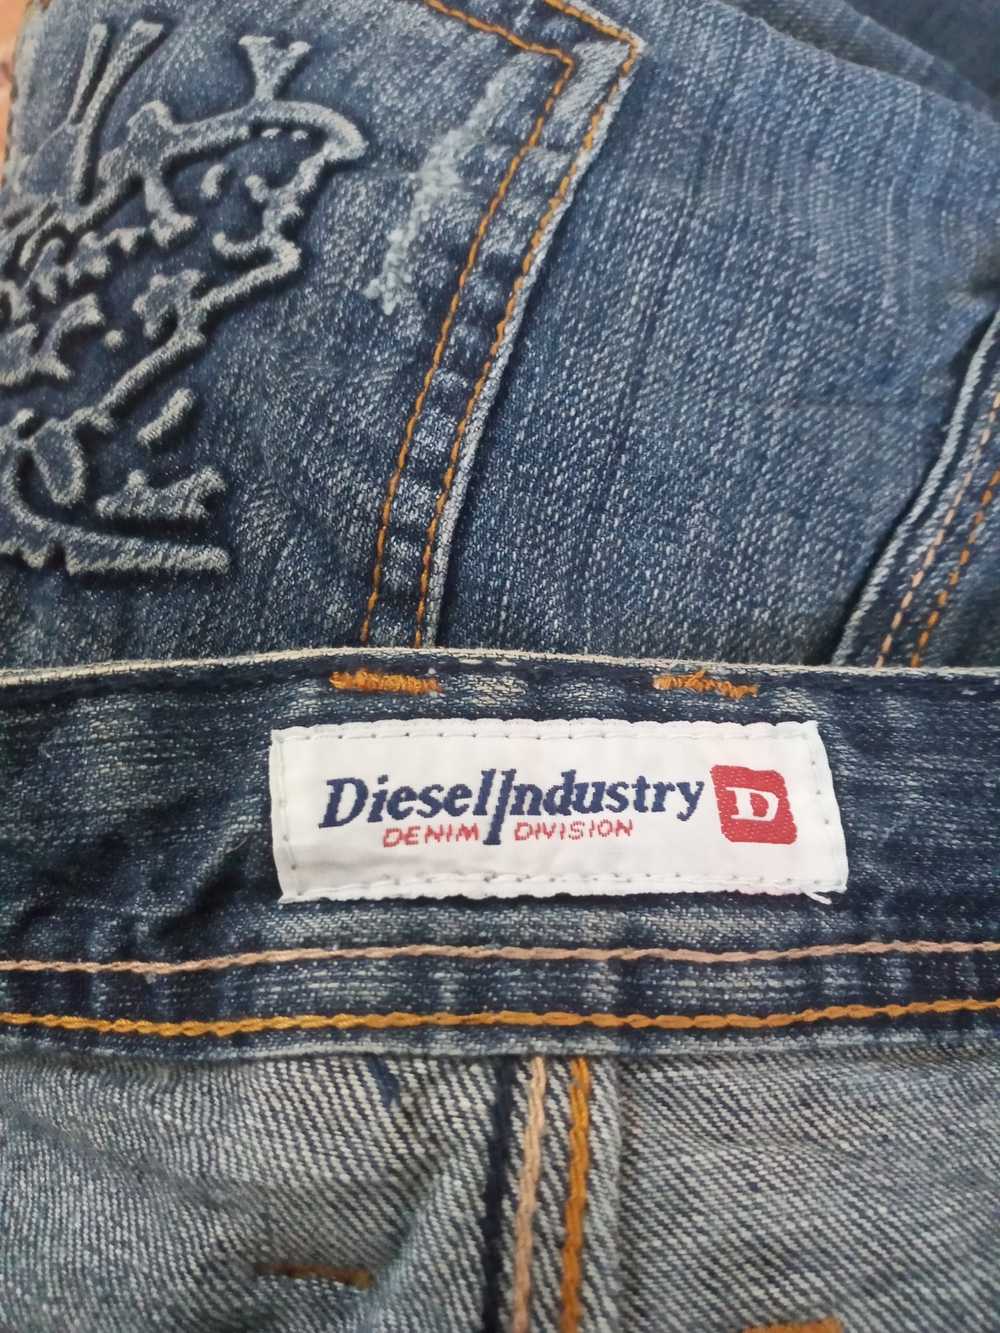 Diesel Diesel Industry Denim Jeans - image 10